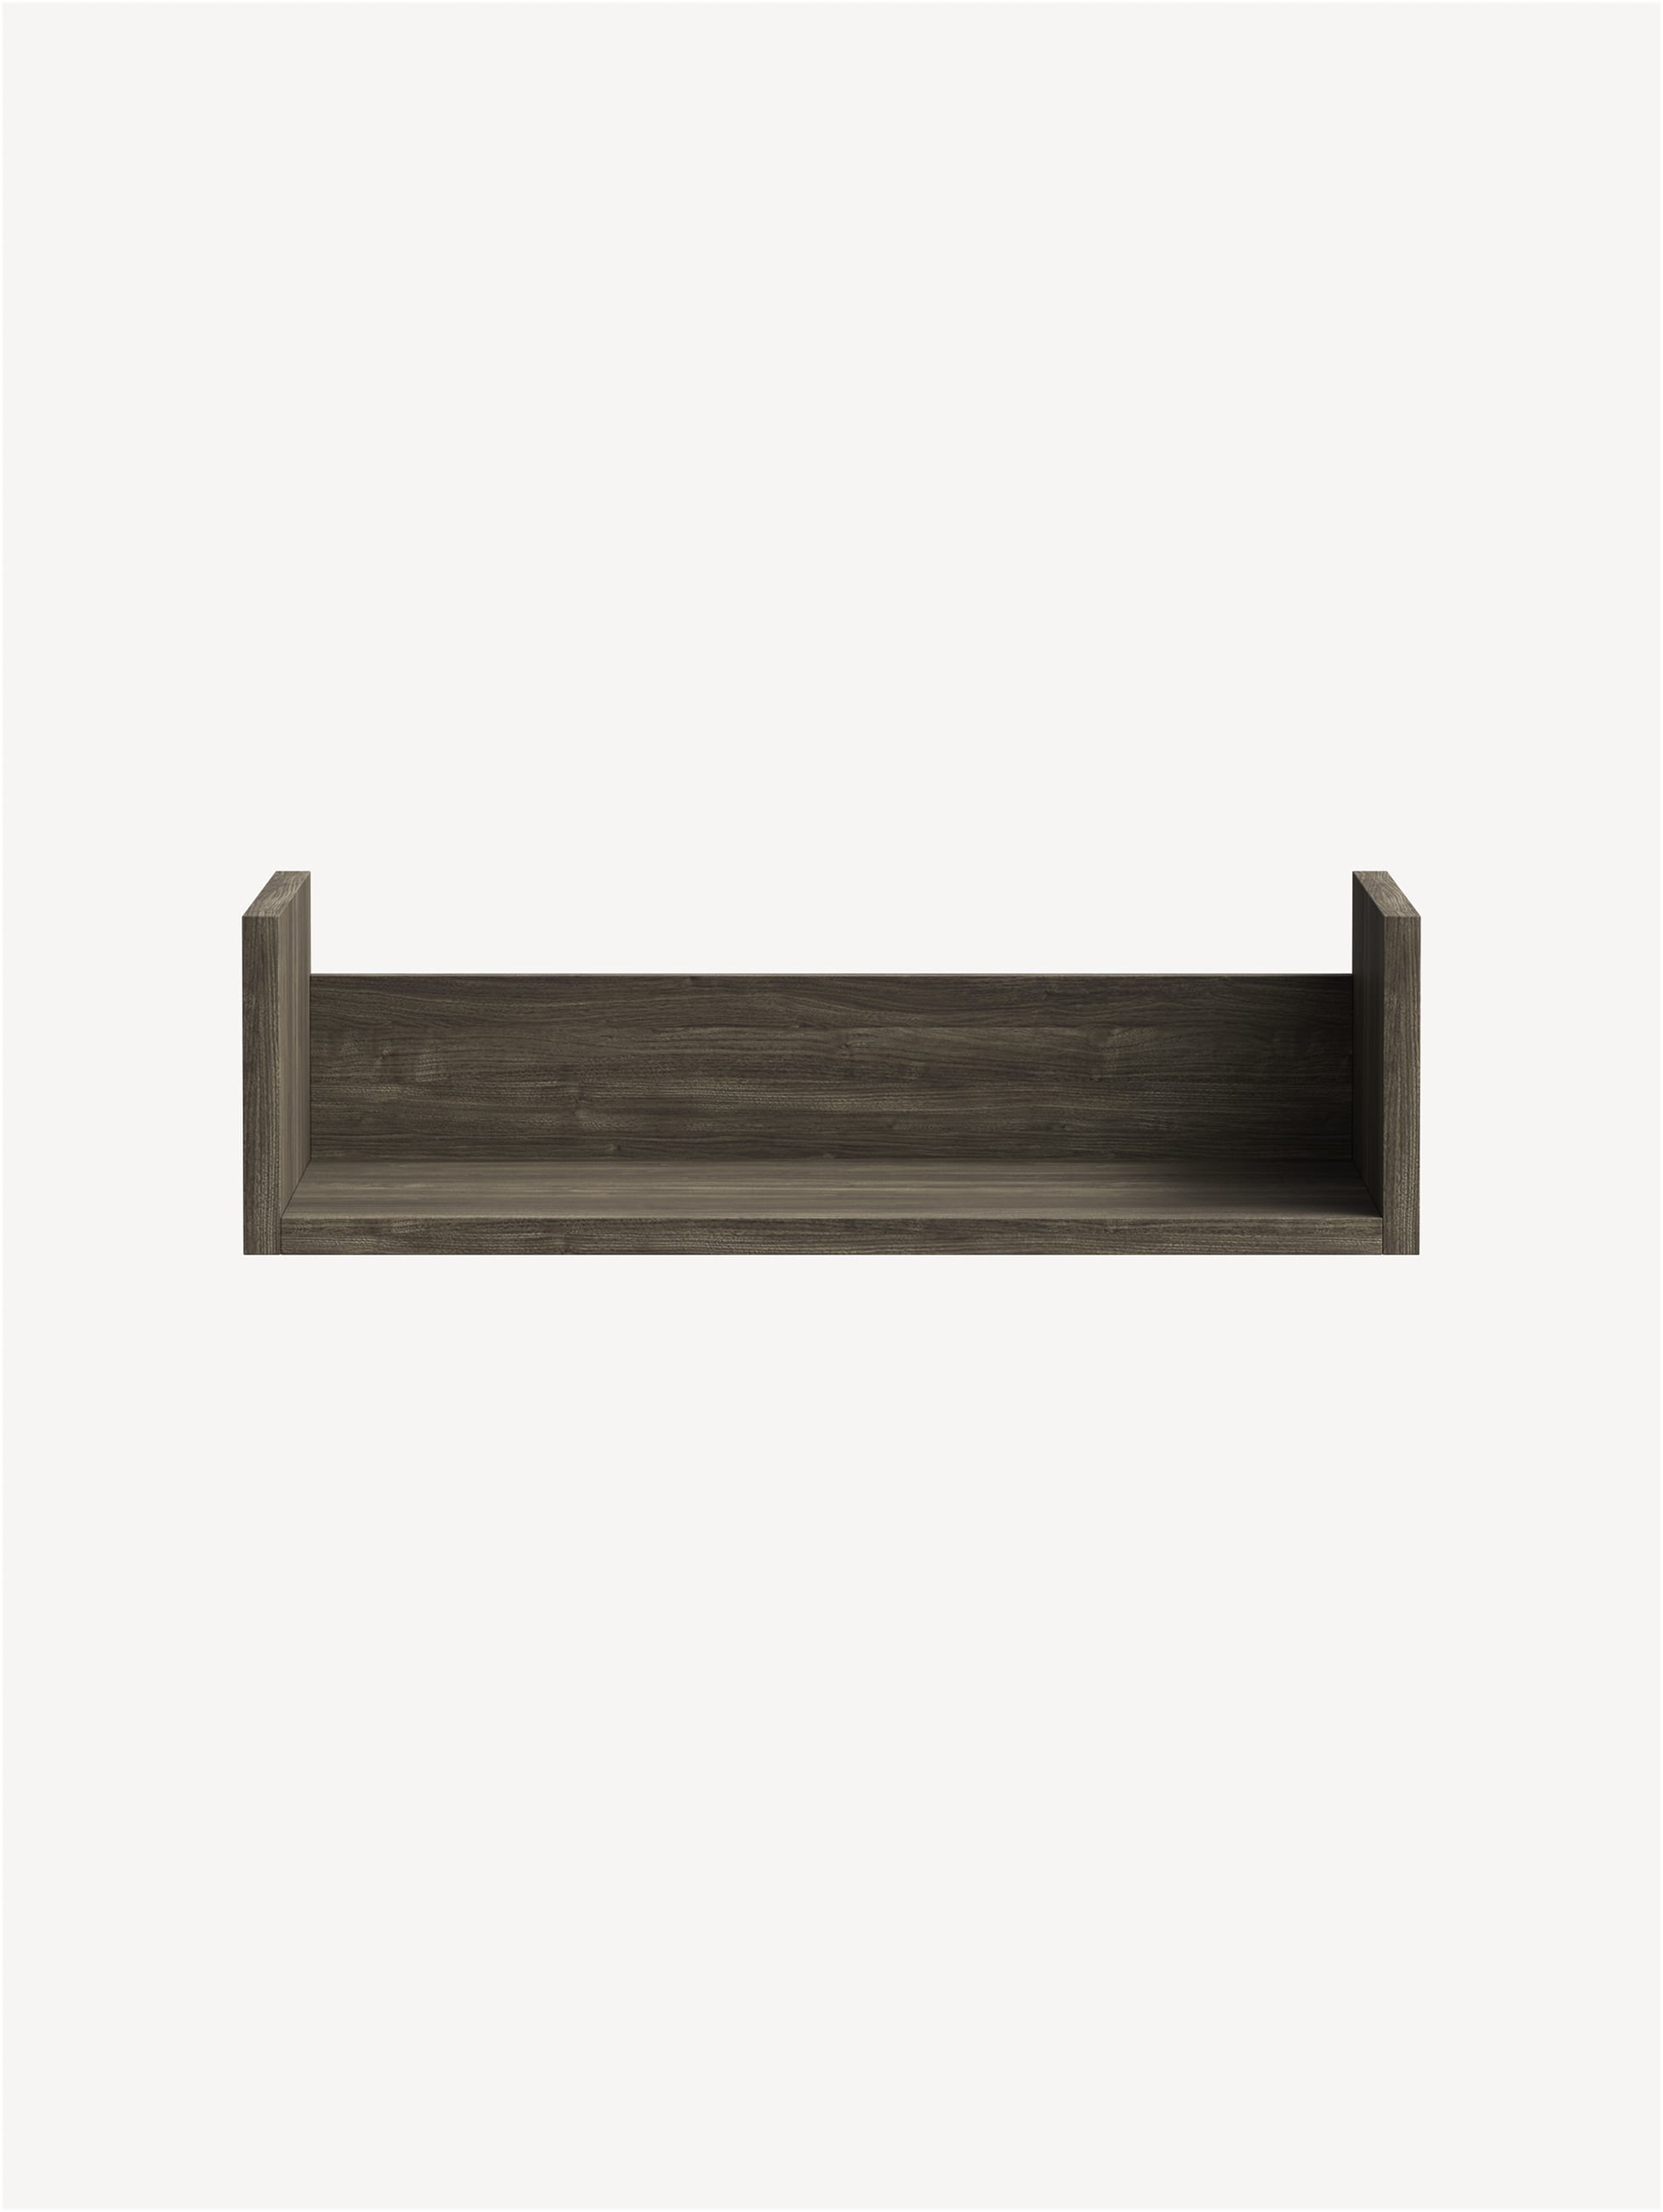 Approach Cubby Storage Shelf in brownish grey wood.